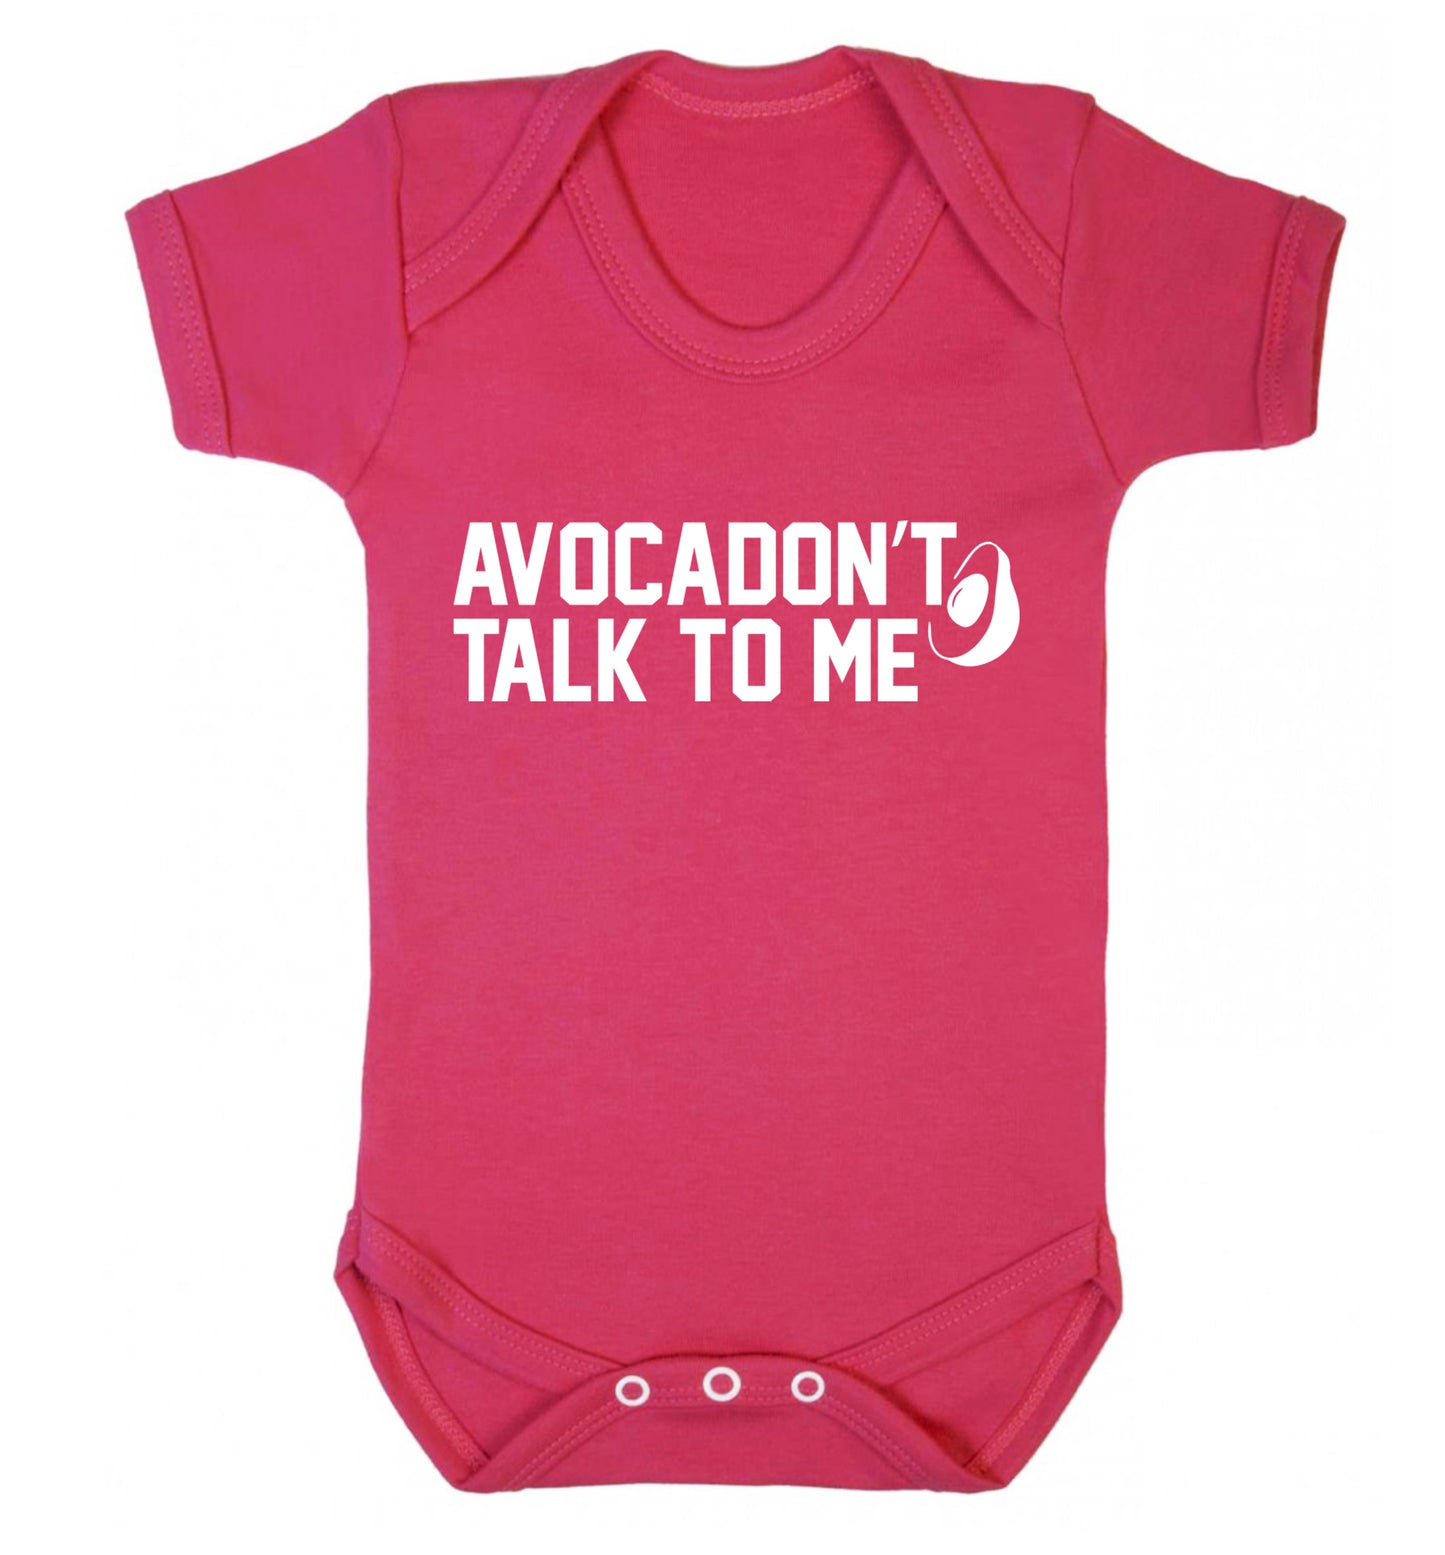 Avocadon't talk to me Baby Vest dark pink 18-24 months